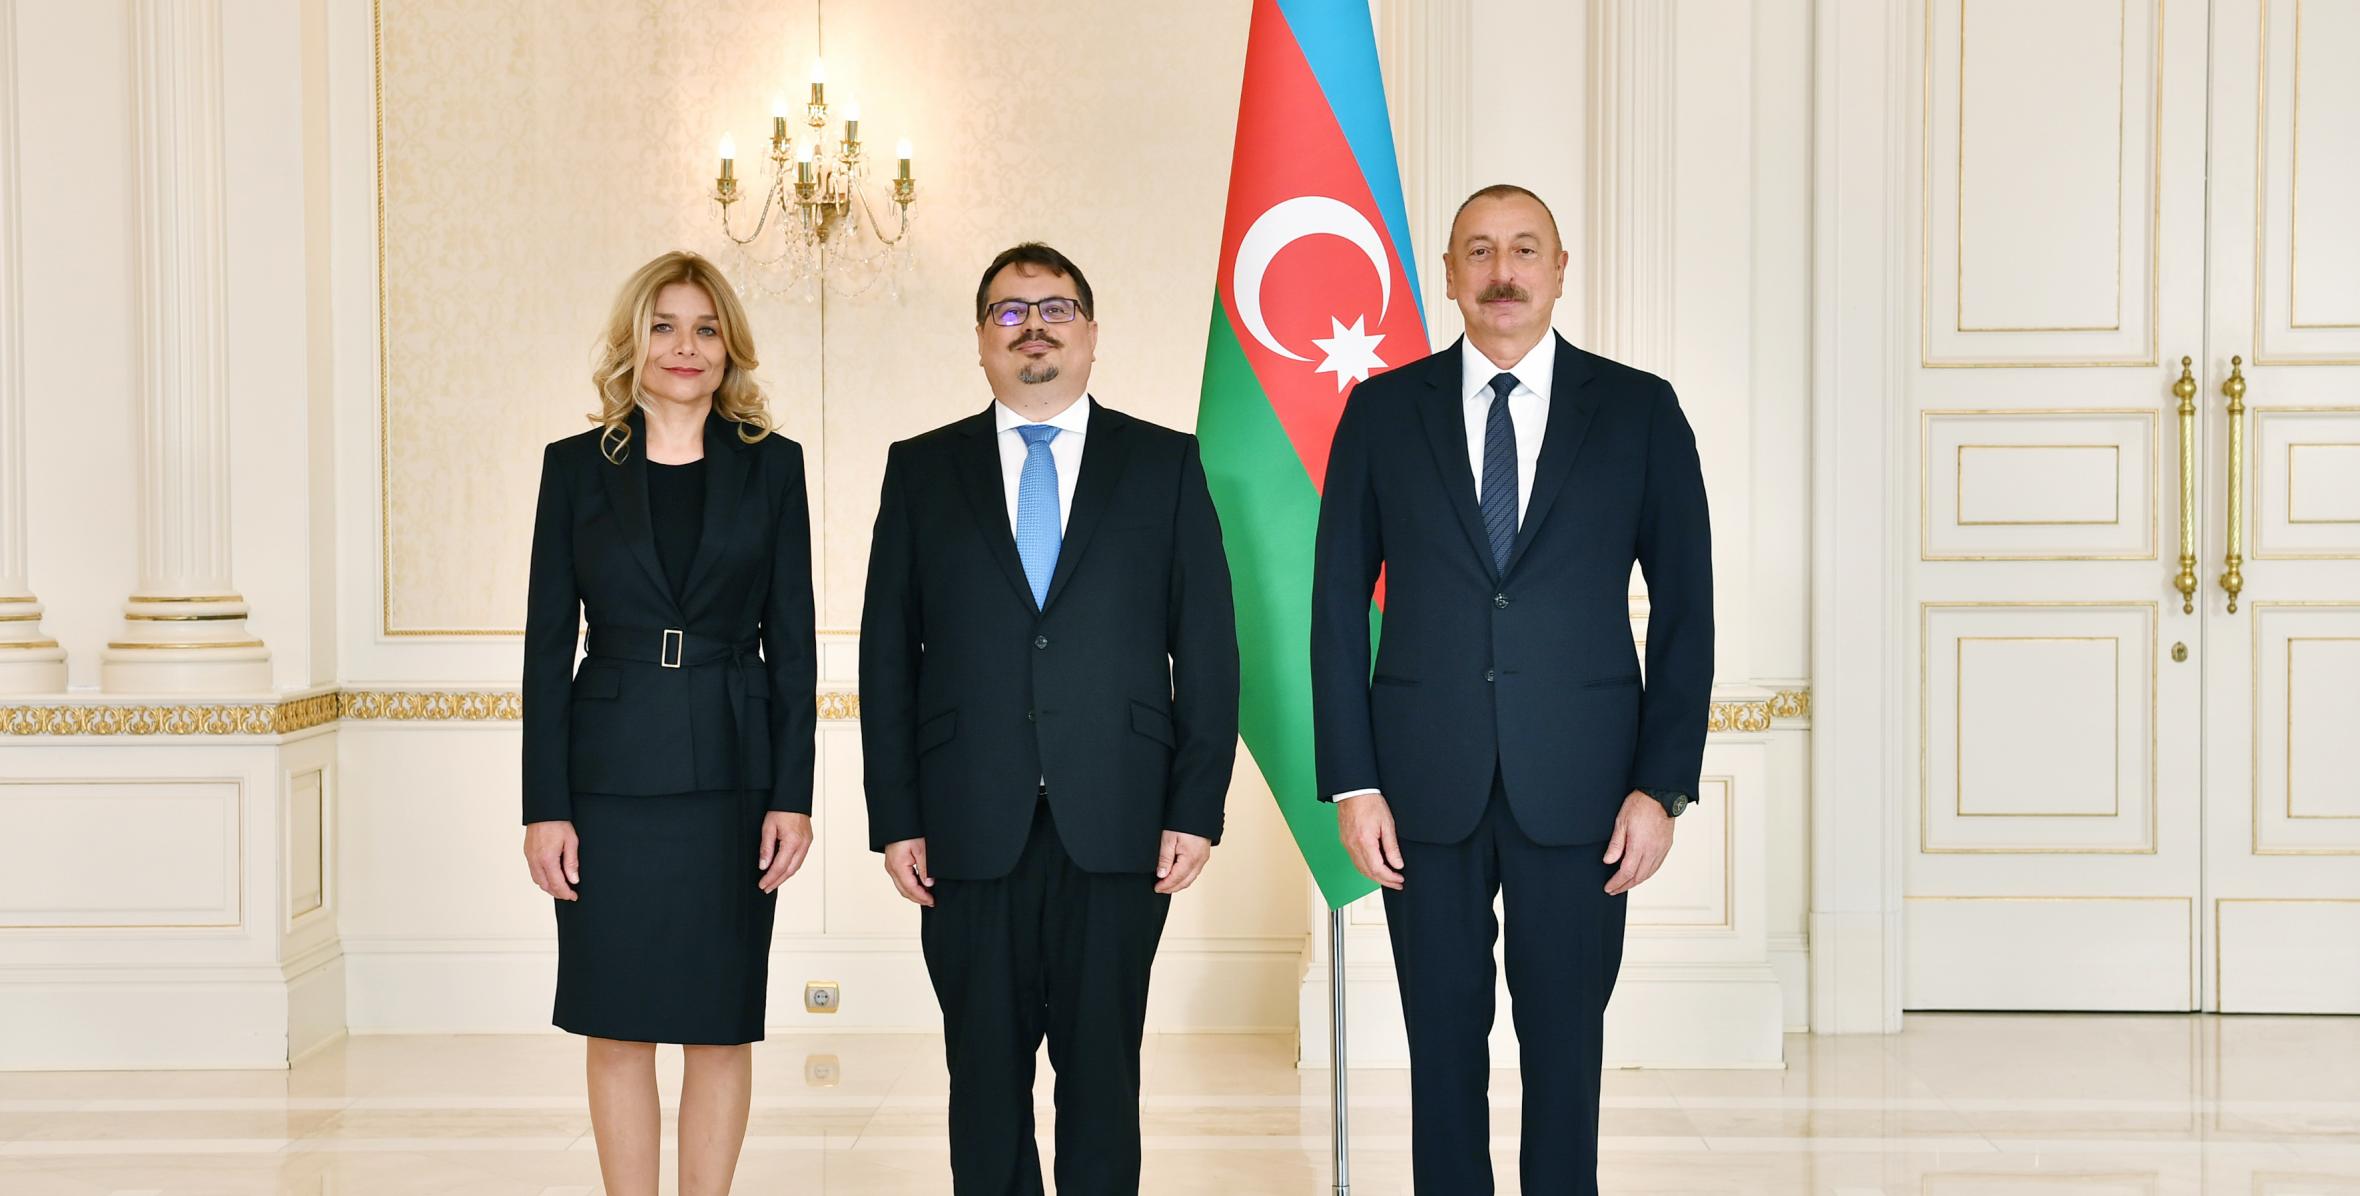 Ильхам Алиев принял верительные грамоты новоназначенного руководителя представительства Европейского Союза в нашей стране